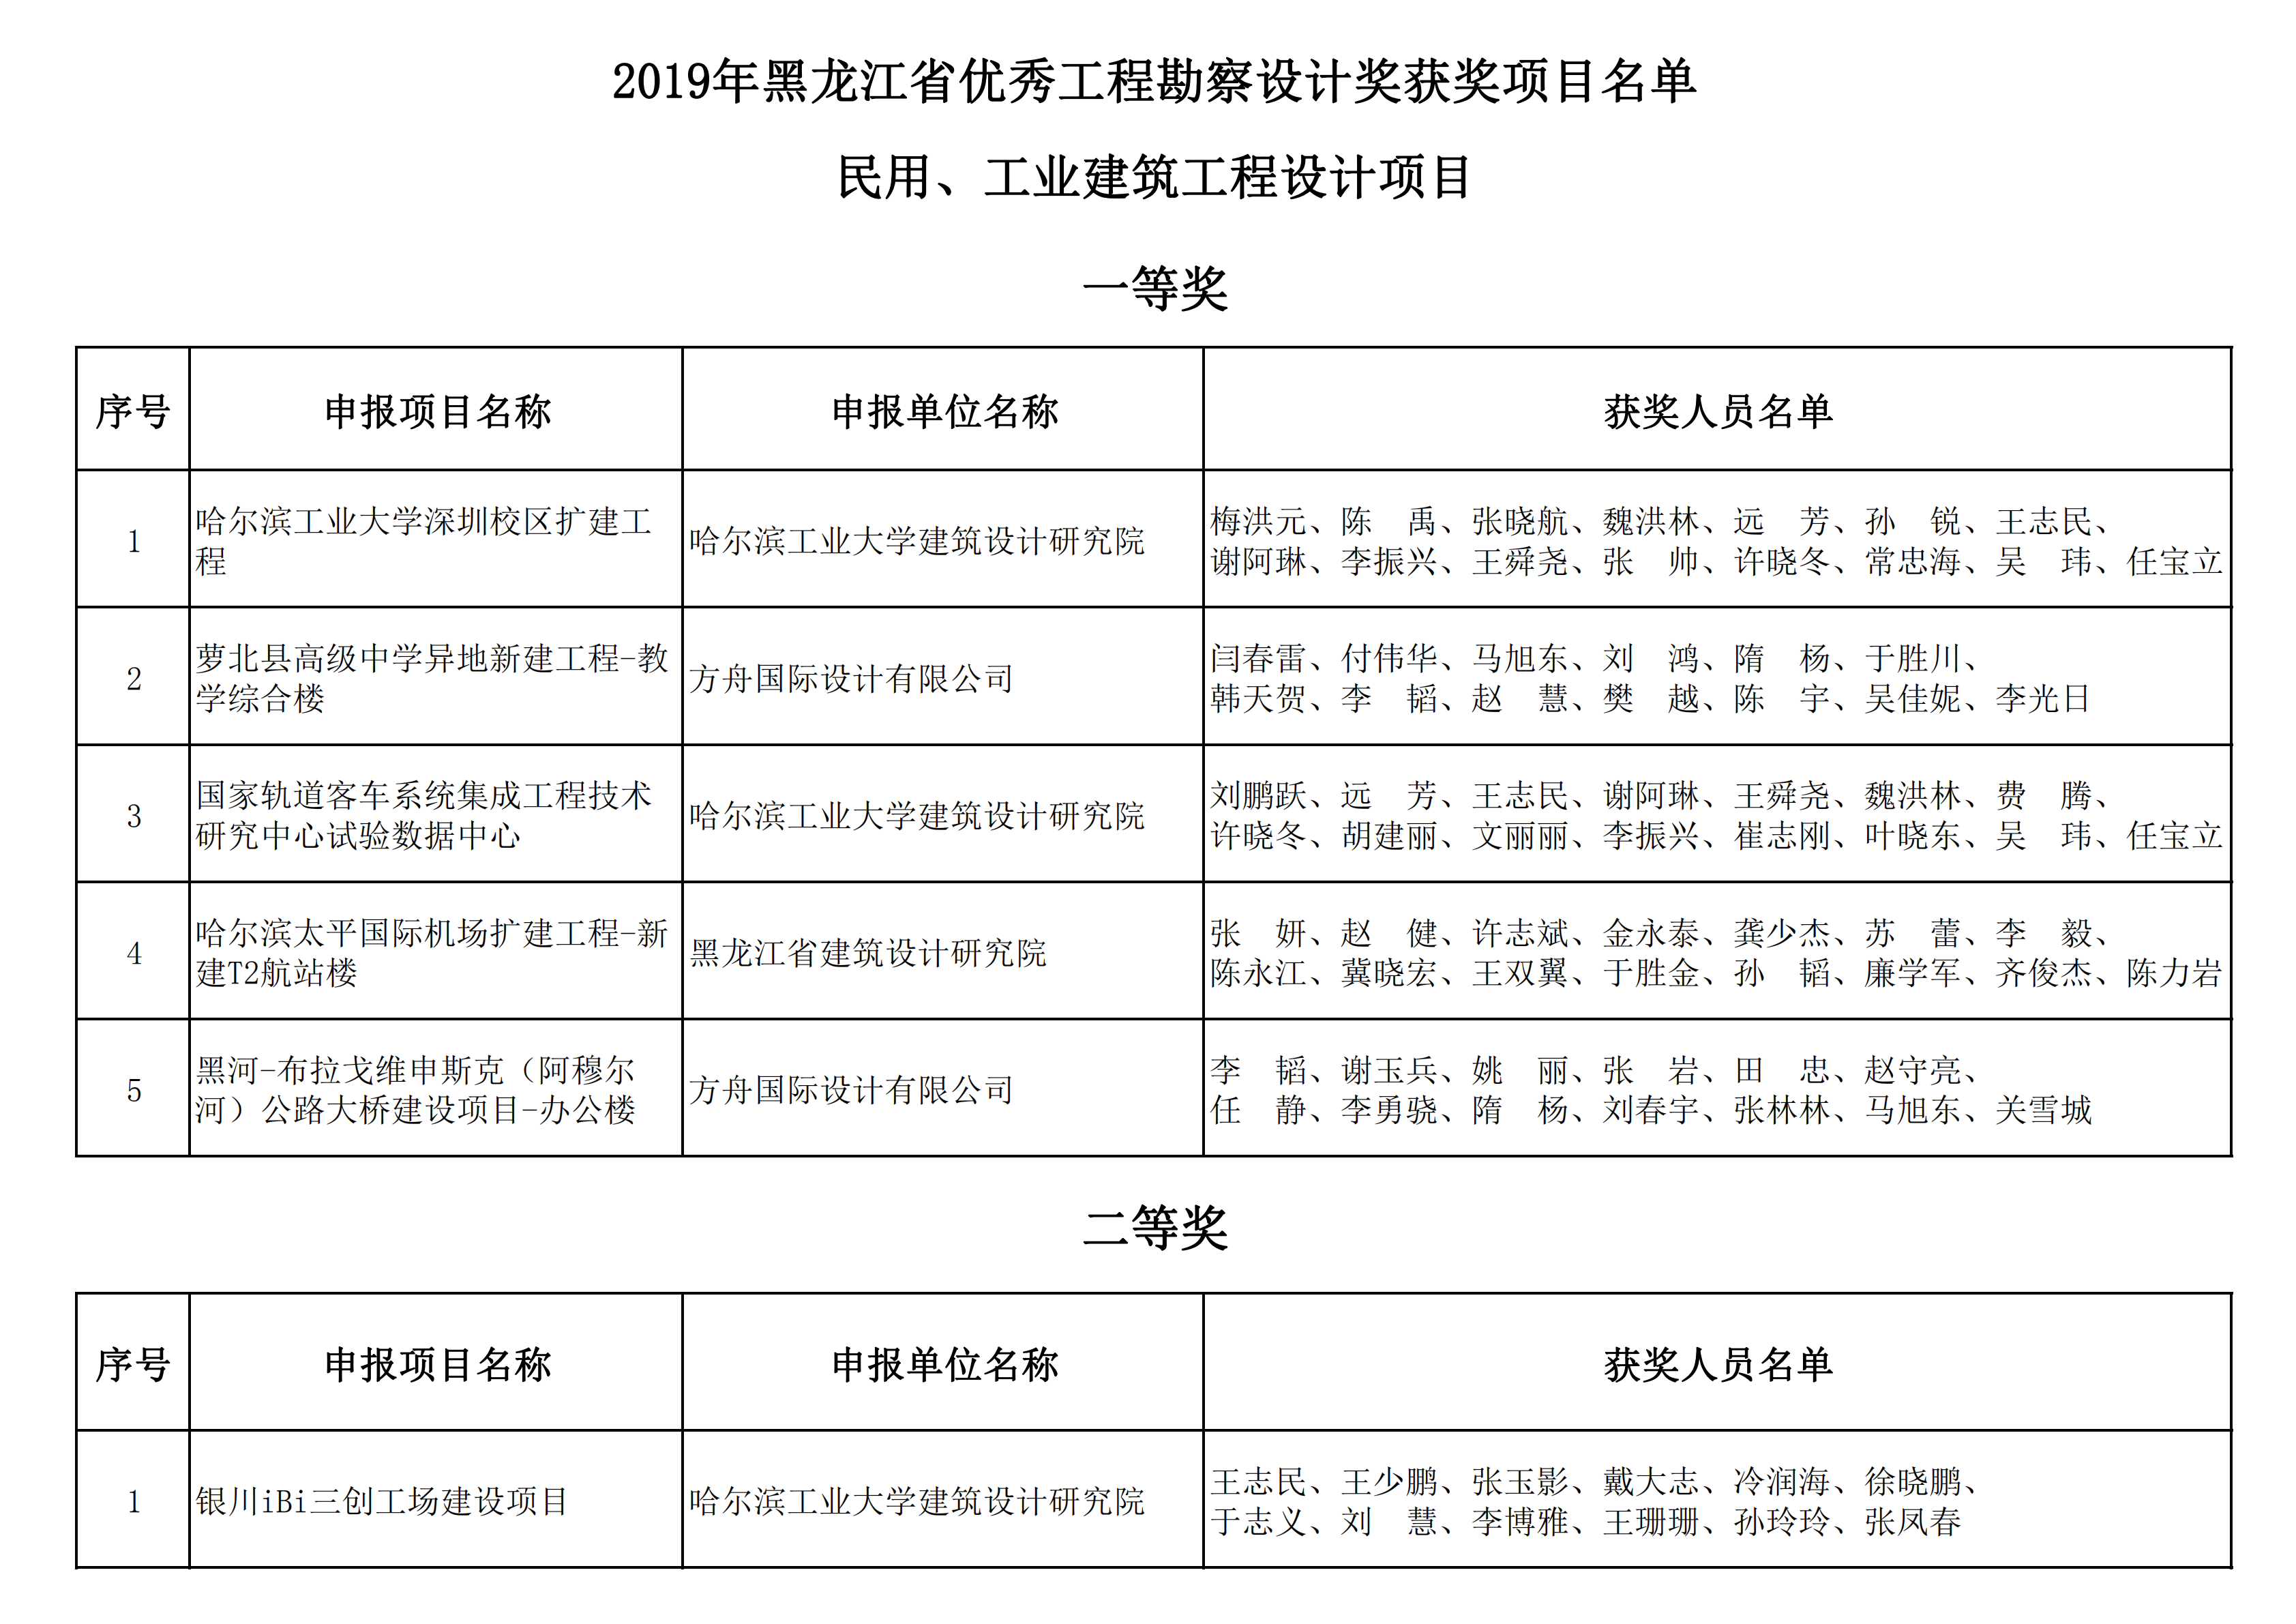 2019年黑龙江省优秀工程勘察设计奖获奖项目名单_00.png